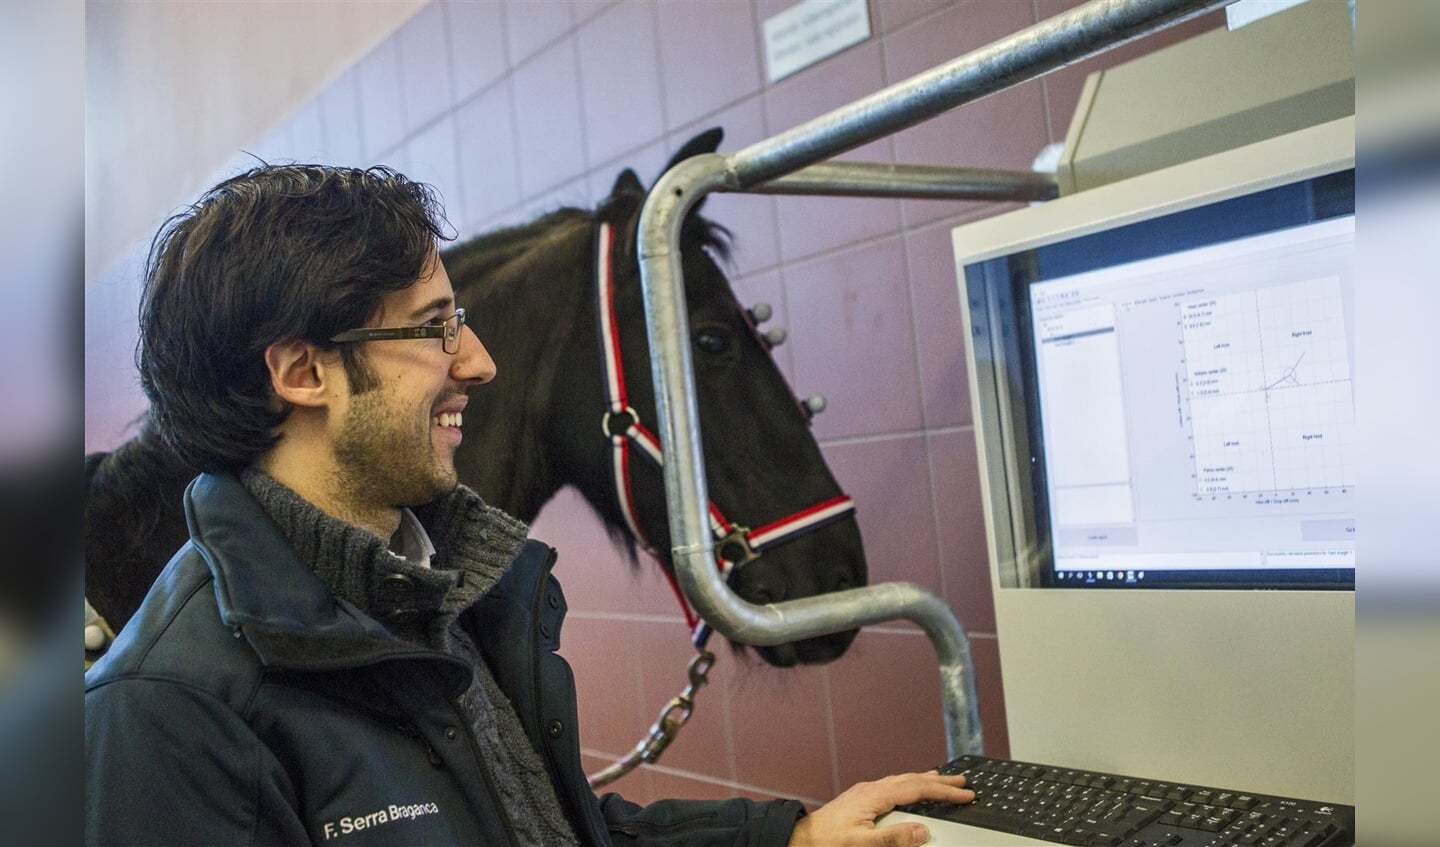 Live meekijken met Qhorse analyse - Universiteitskliniek voor Paarde